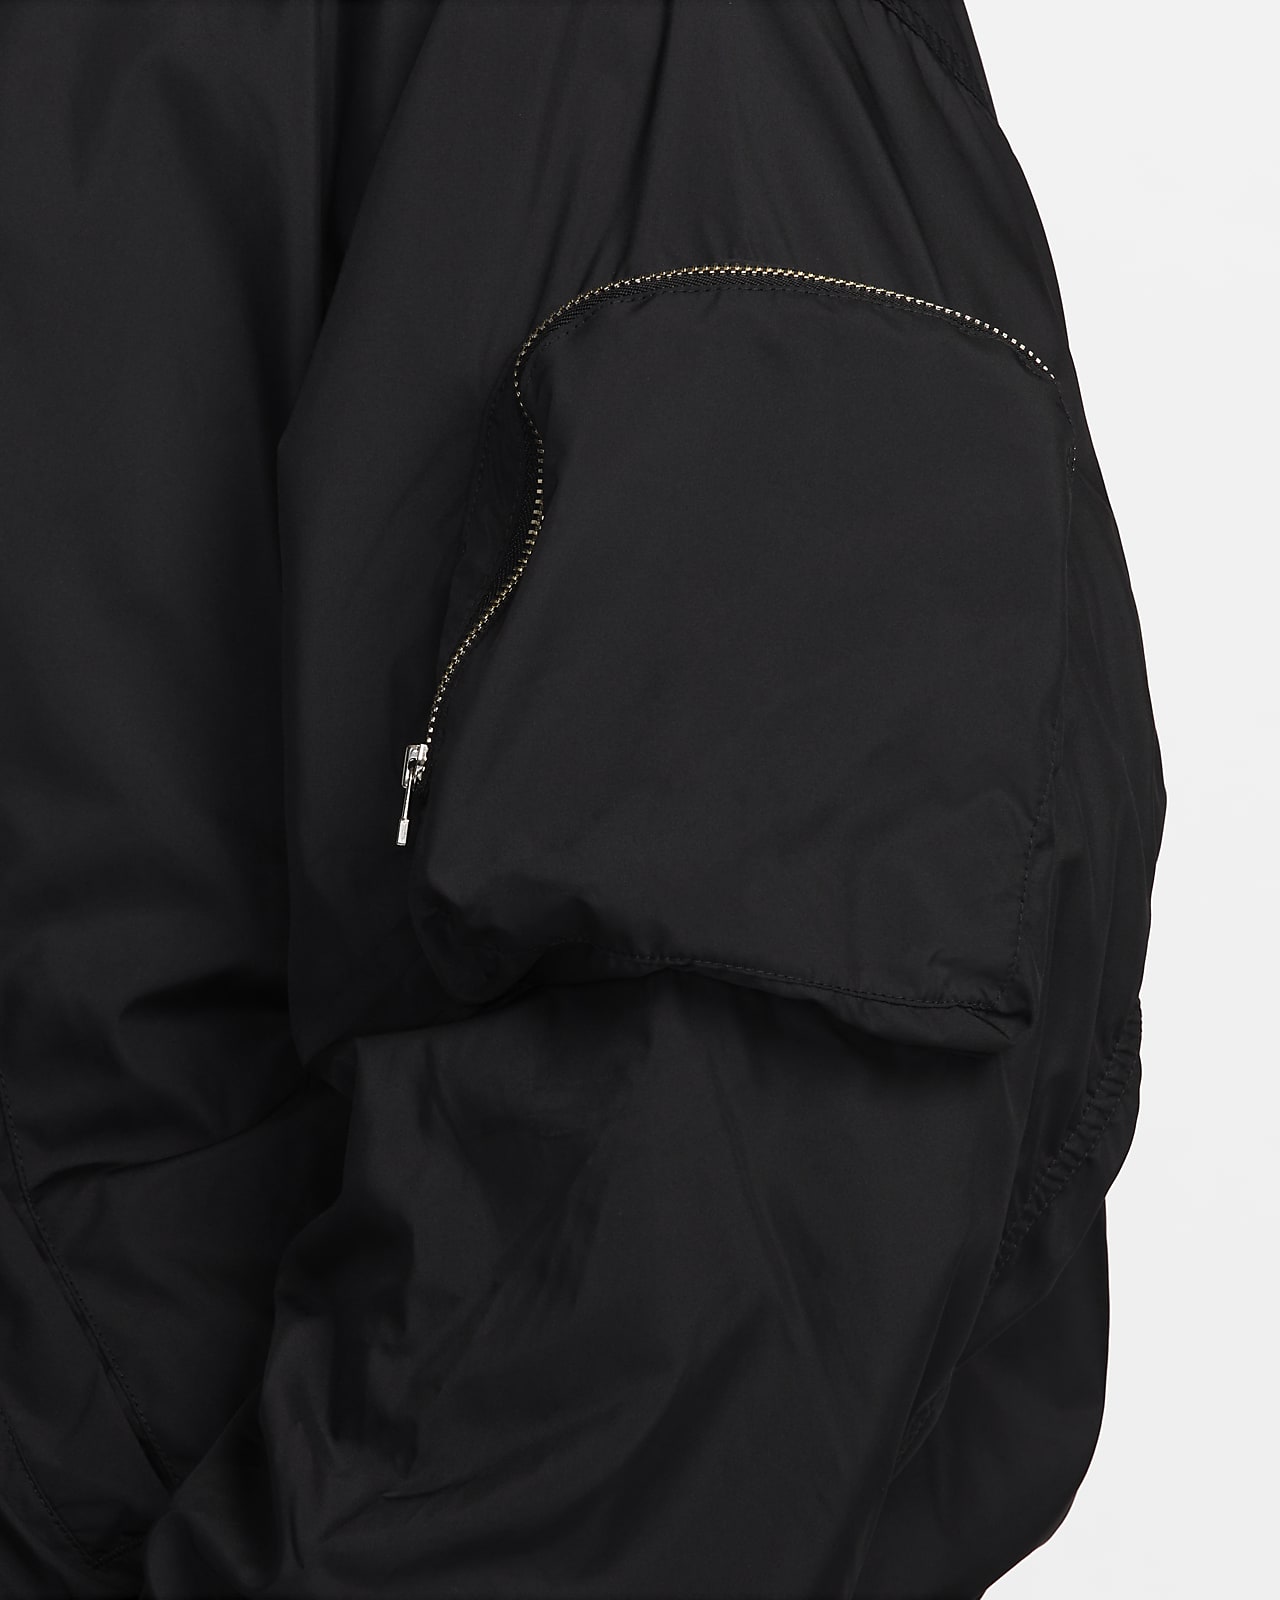 Niuer Women Jackets Plus Size Outwear Long Sleeve Bomber Jacket